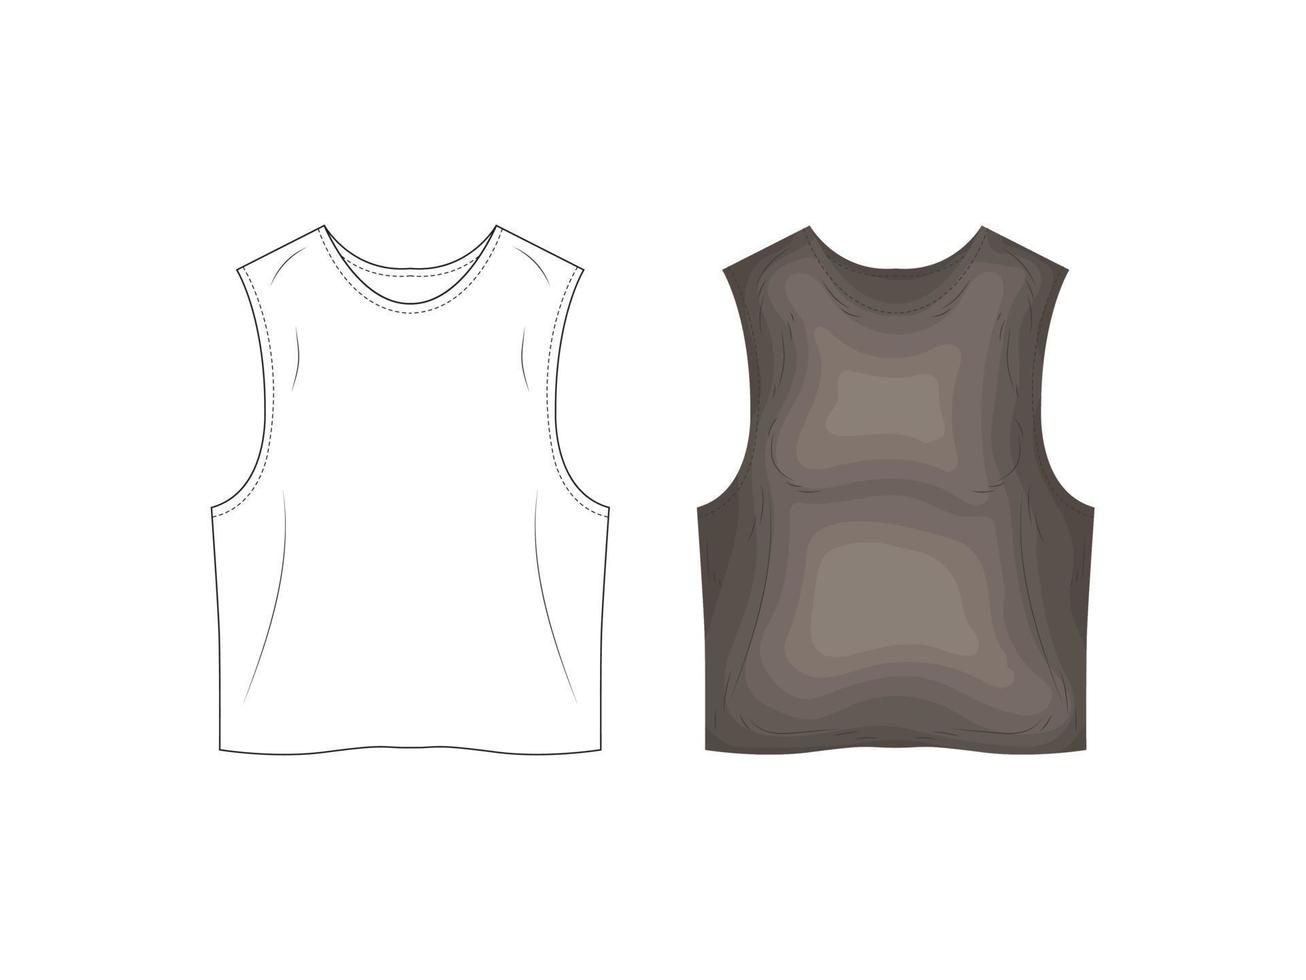 Modeproduktkatalog Uniformen Mockup Skizze Vektor Illustration Kleidung Silhouette